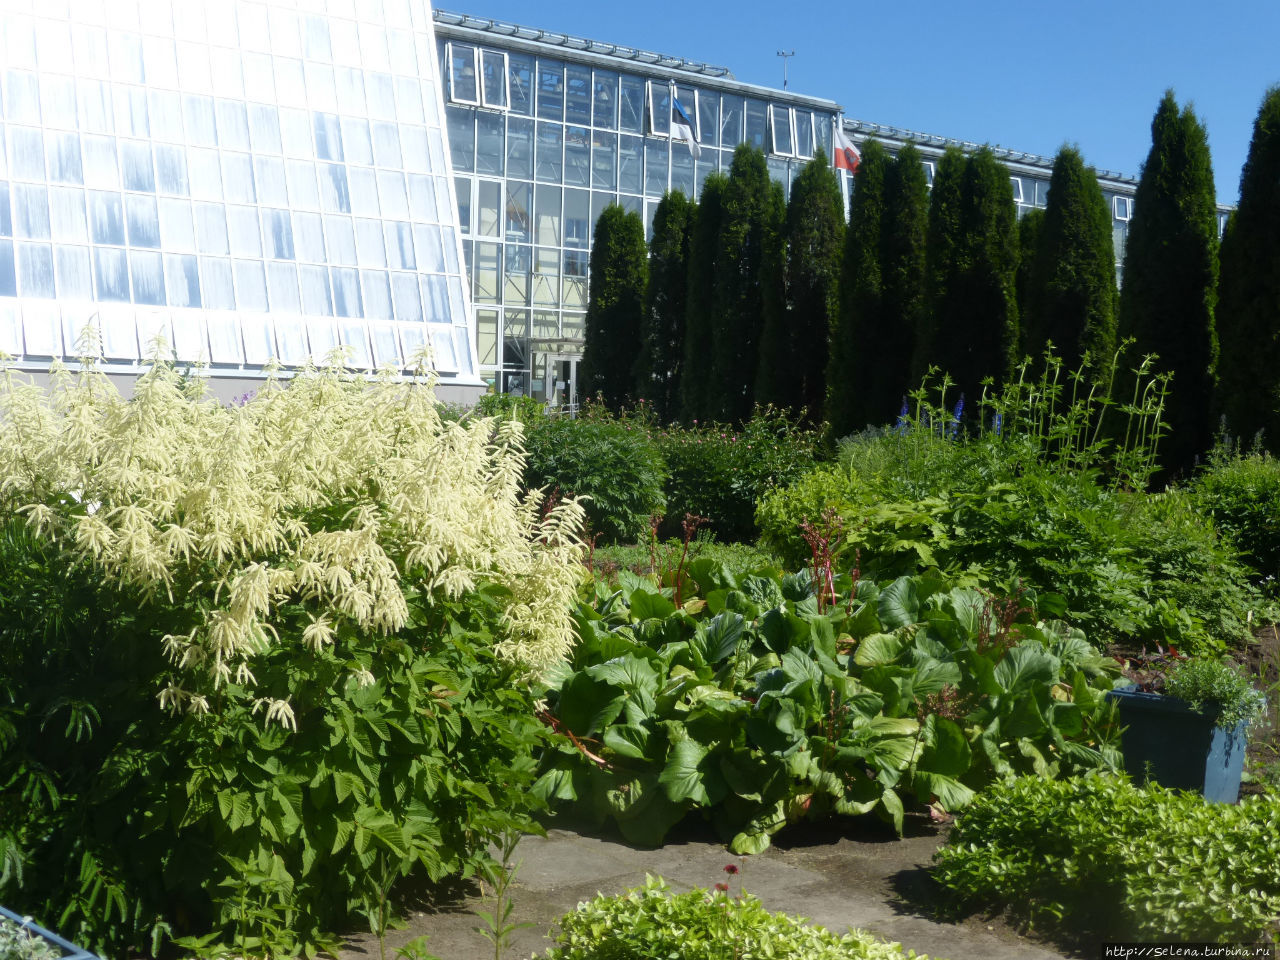 Ботанический сад Тартуского университета / Botanical garden of Tartu University